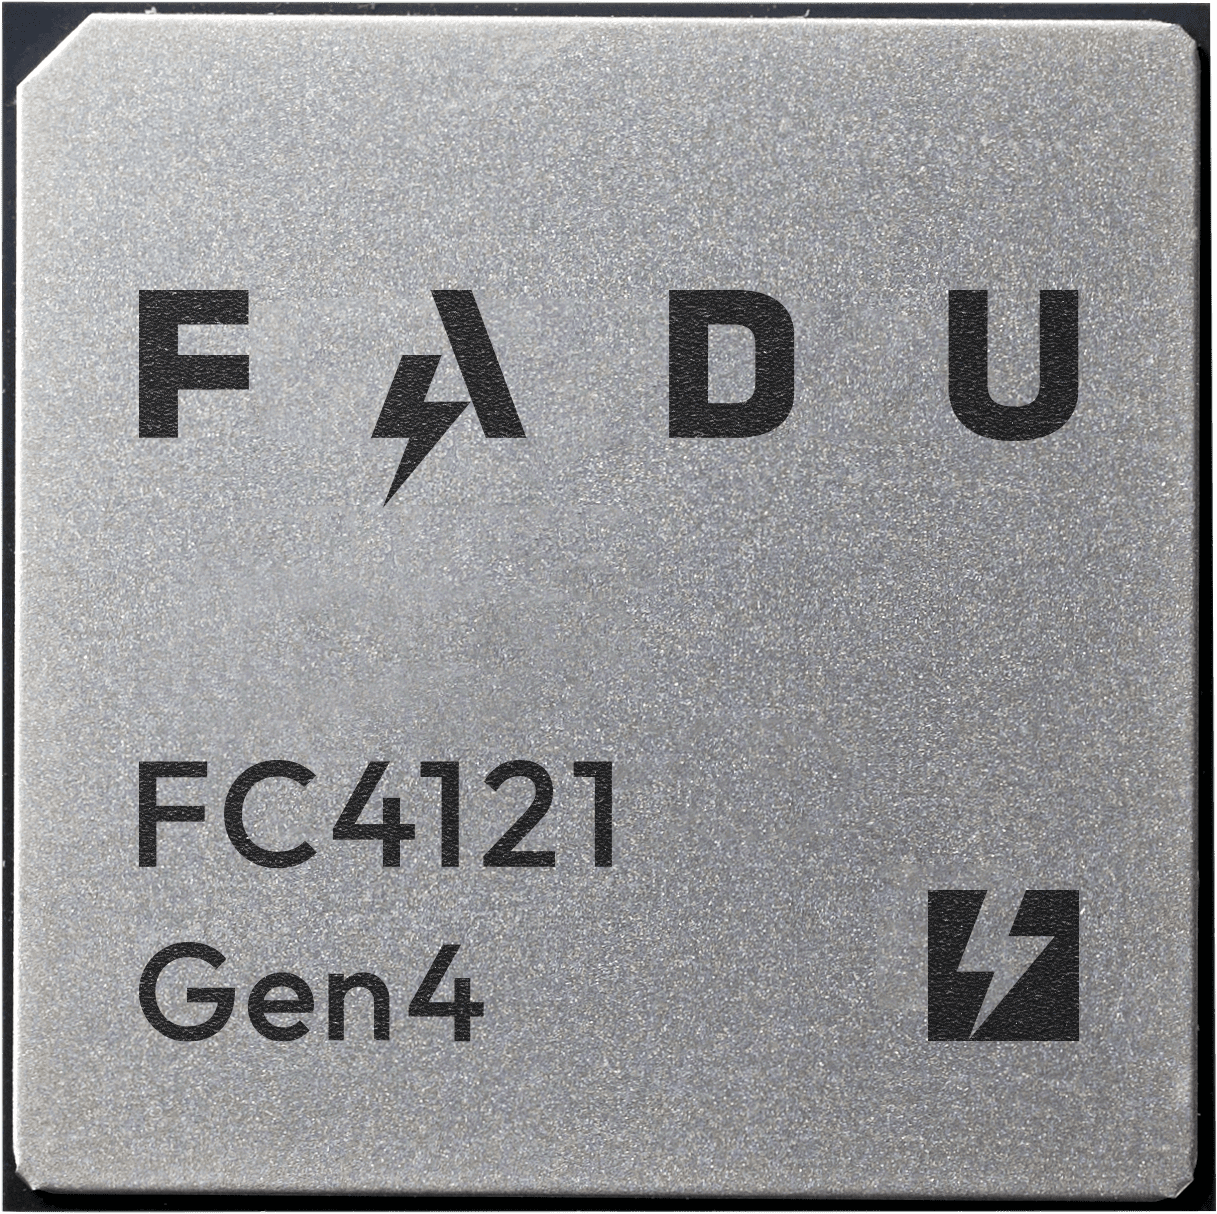 FC4121 Gen4